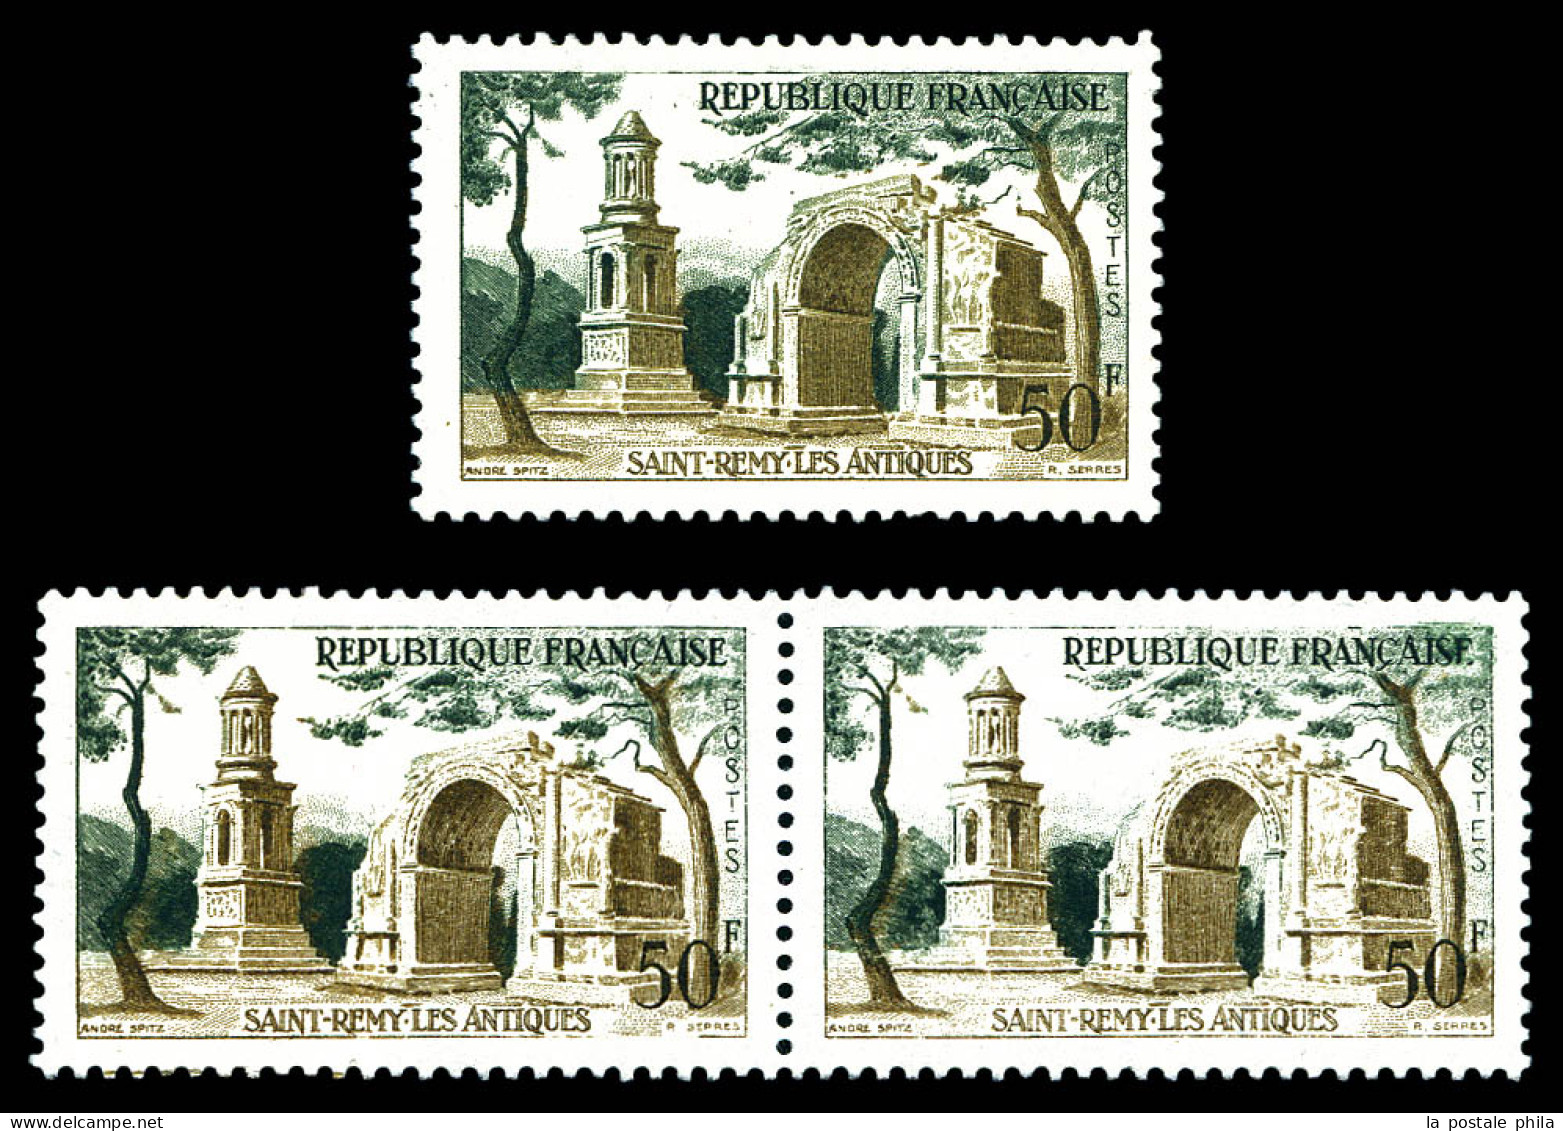 N°1130b, 50f St Rémy Les Antiques: Impression Sur Raccord En Paire + Arche Verte. SUP. R. (signé Brun/certificat)  Quali - Neufs